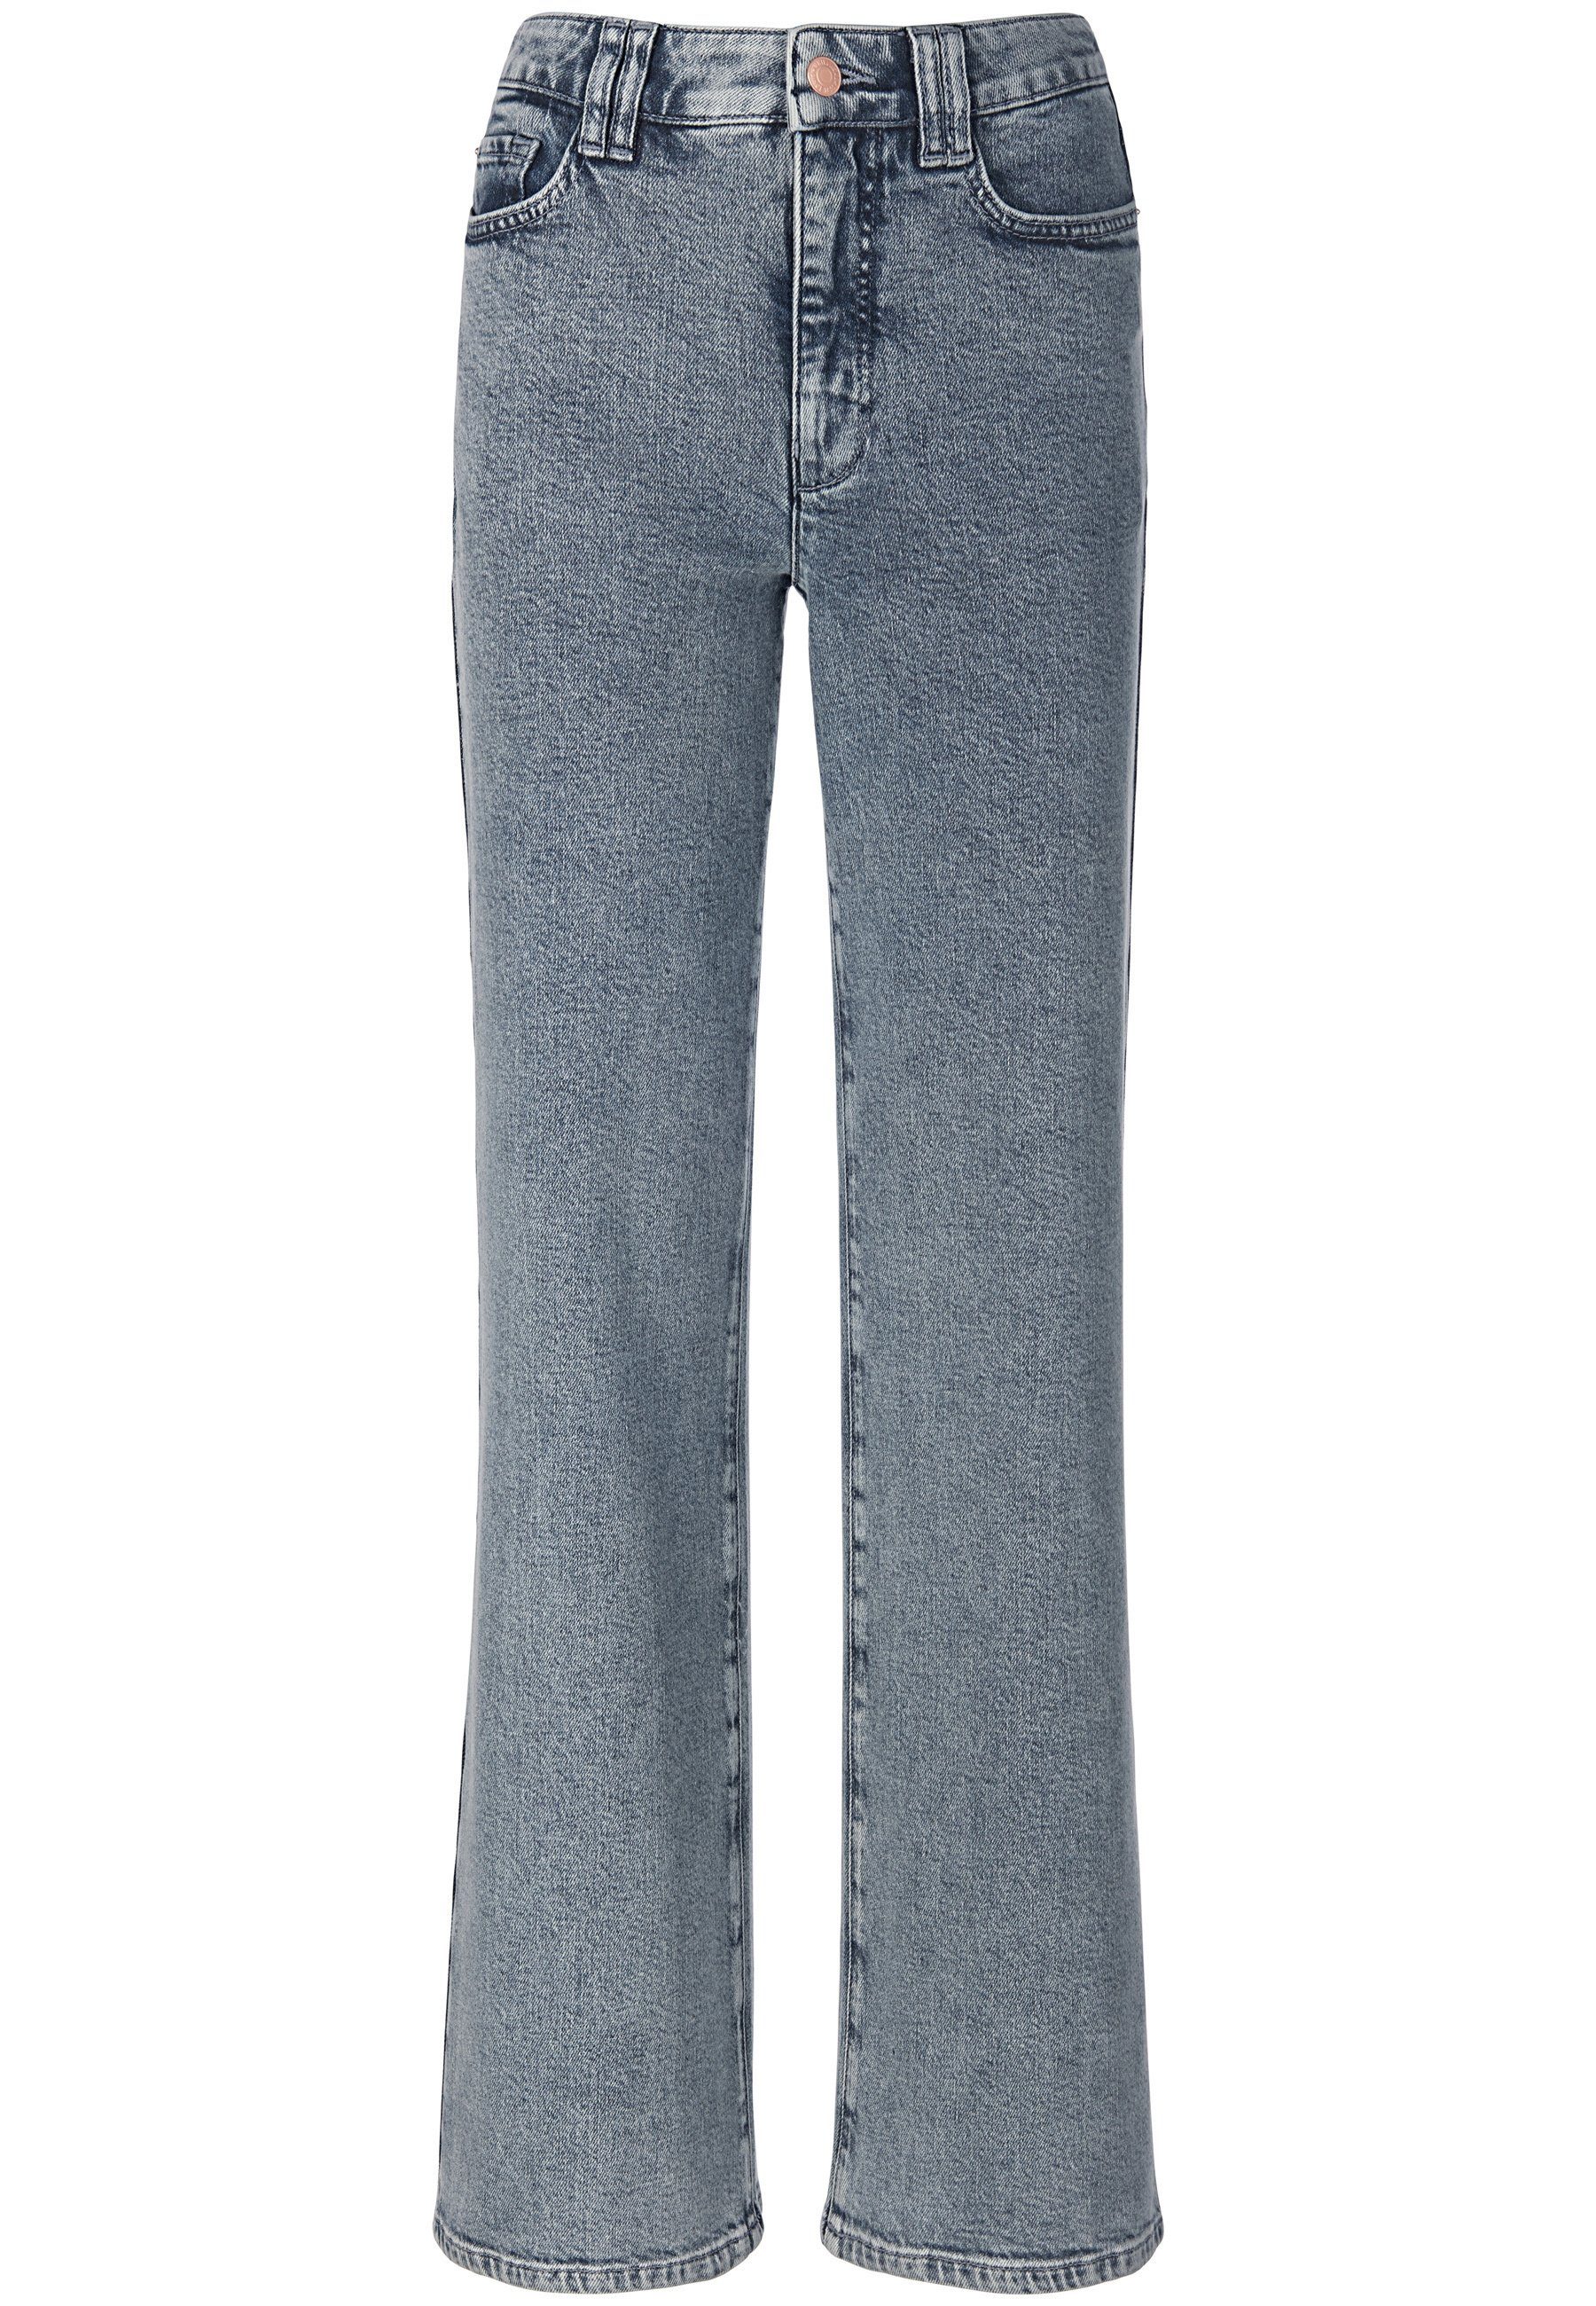 DAY.LIKE 5-Pocket-Jeans Cotton mit hellblau Taschen